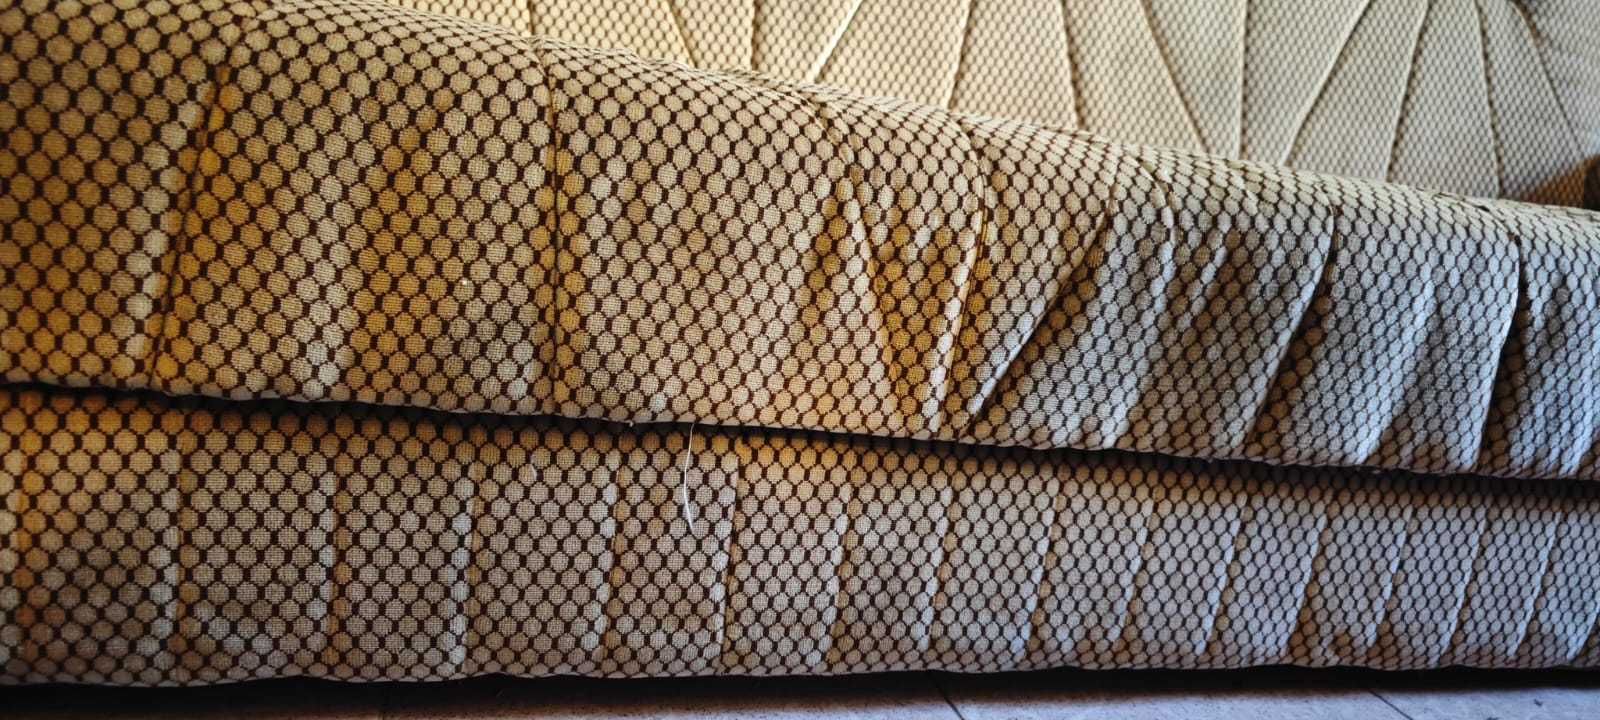 Sofá antigo em tecido muito bem estimado - 1,90m x 0,8m